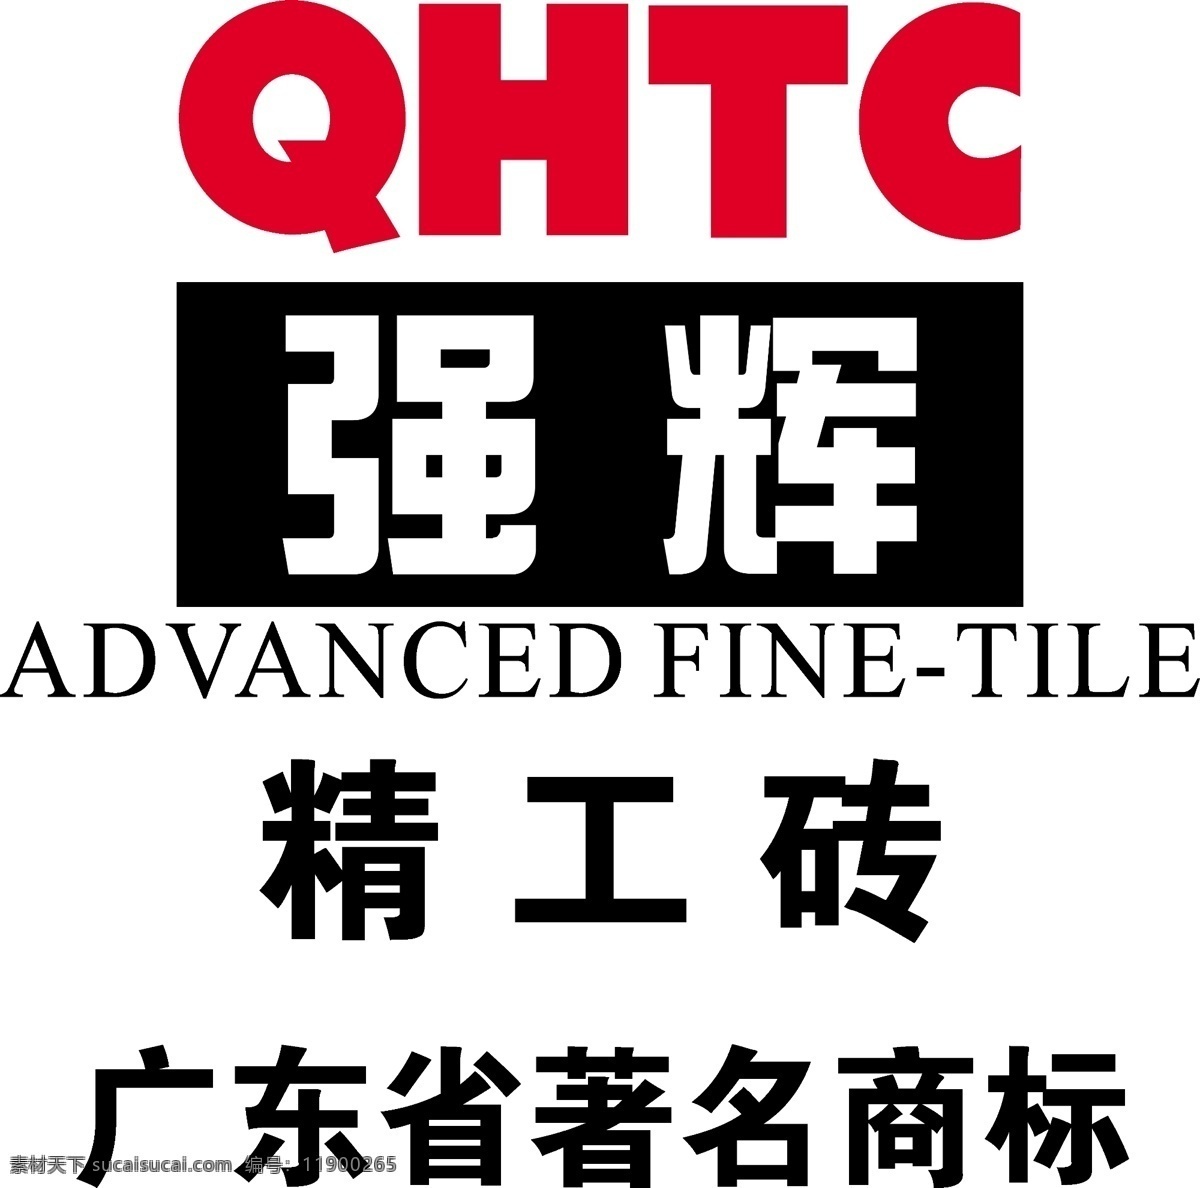 强辉精工砖 红色 强辉 精工砖 qhtc 标 logo